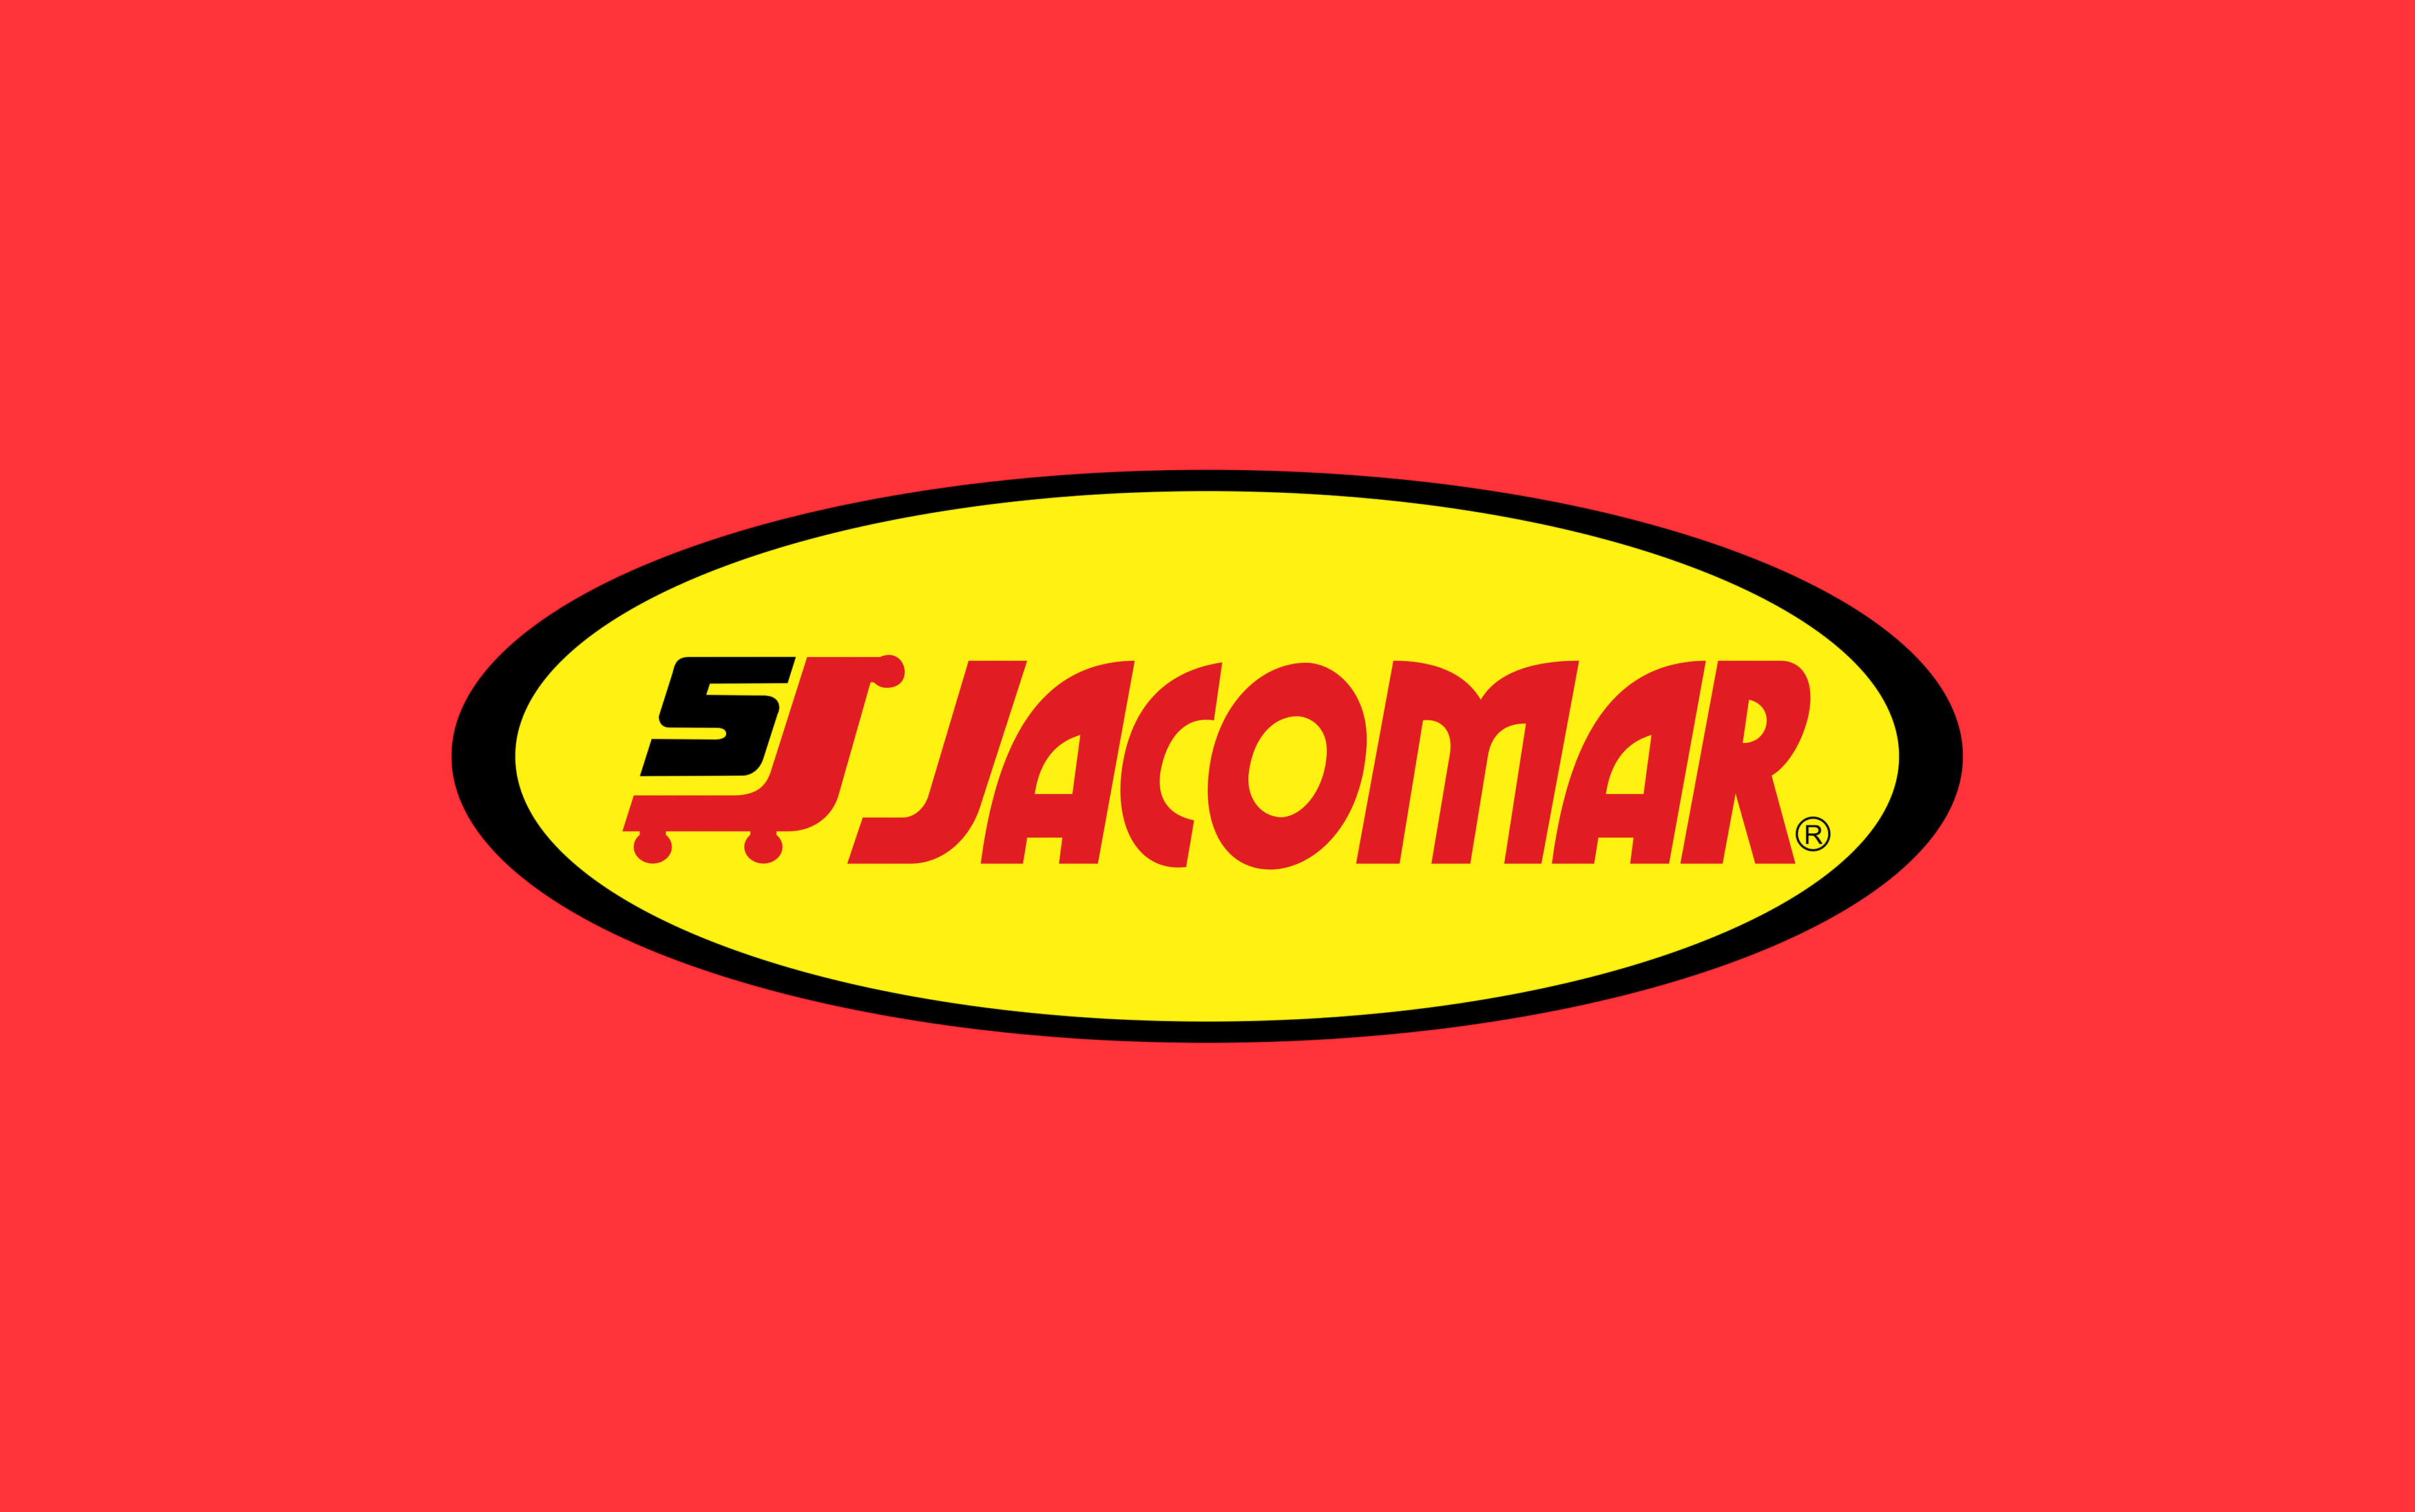 Jacomar